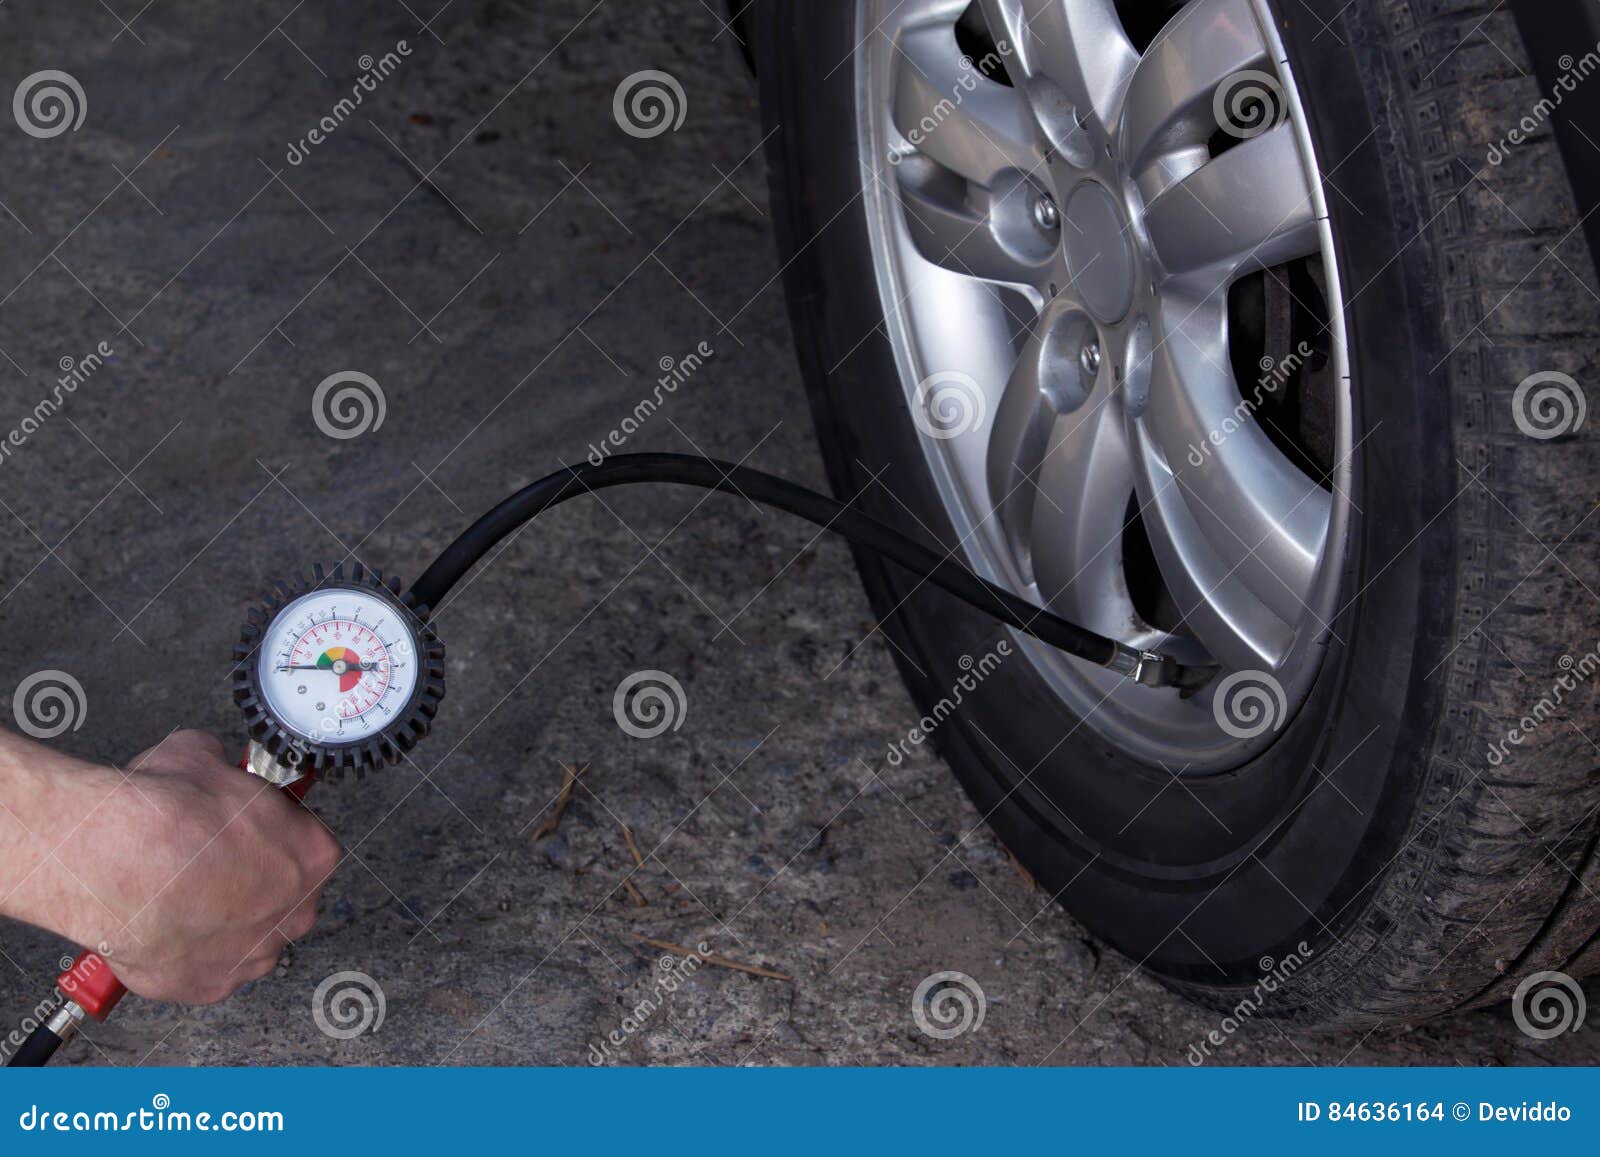 Накачать колесо видео. Замерзла для надувки колеса. Можно ли выхлопными газами накачать колесо. Накачать колесо машины компрессором ночь зима.